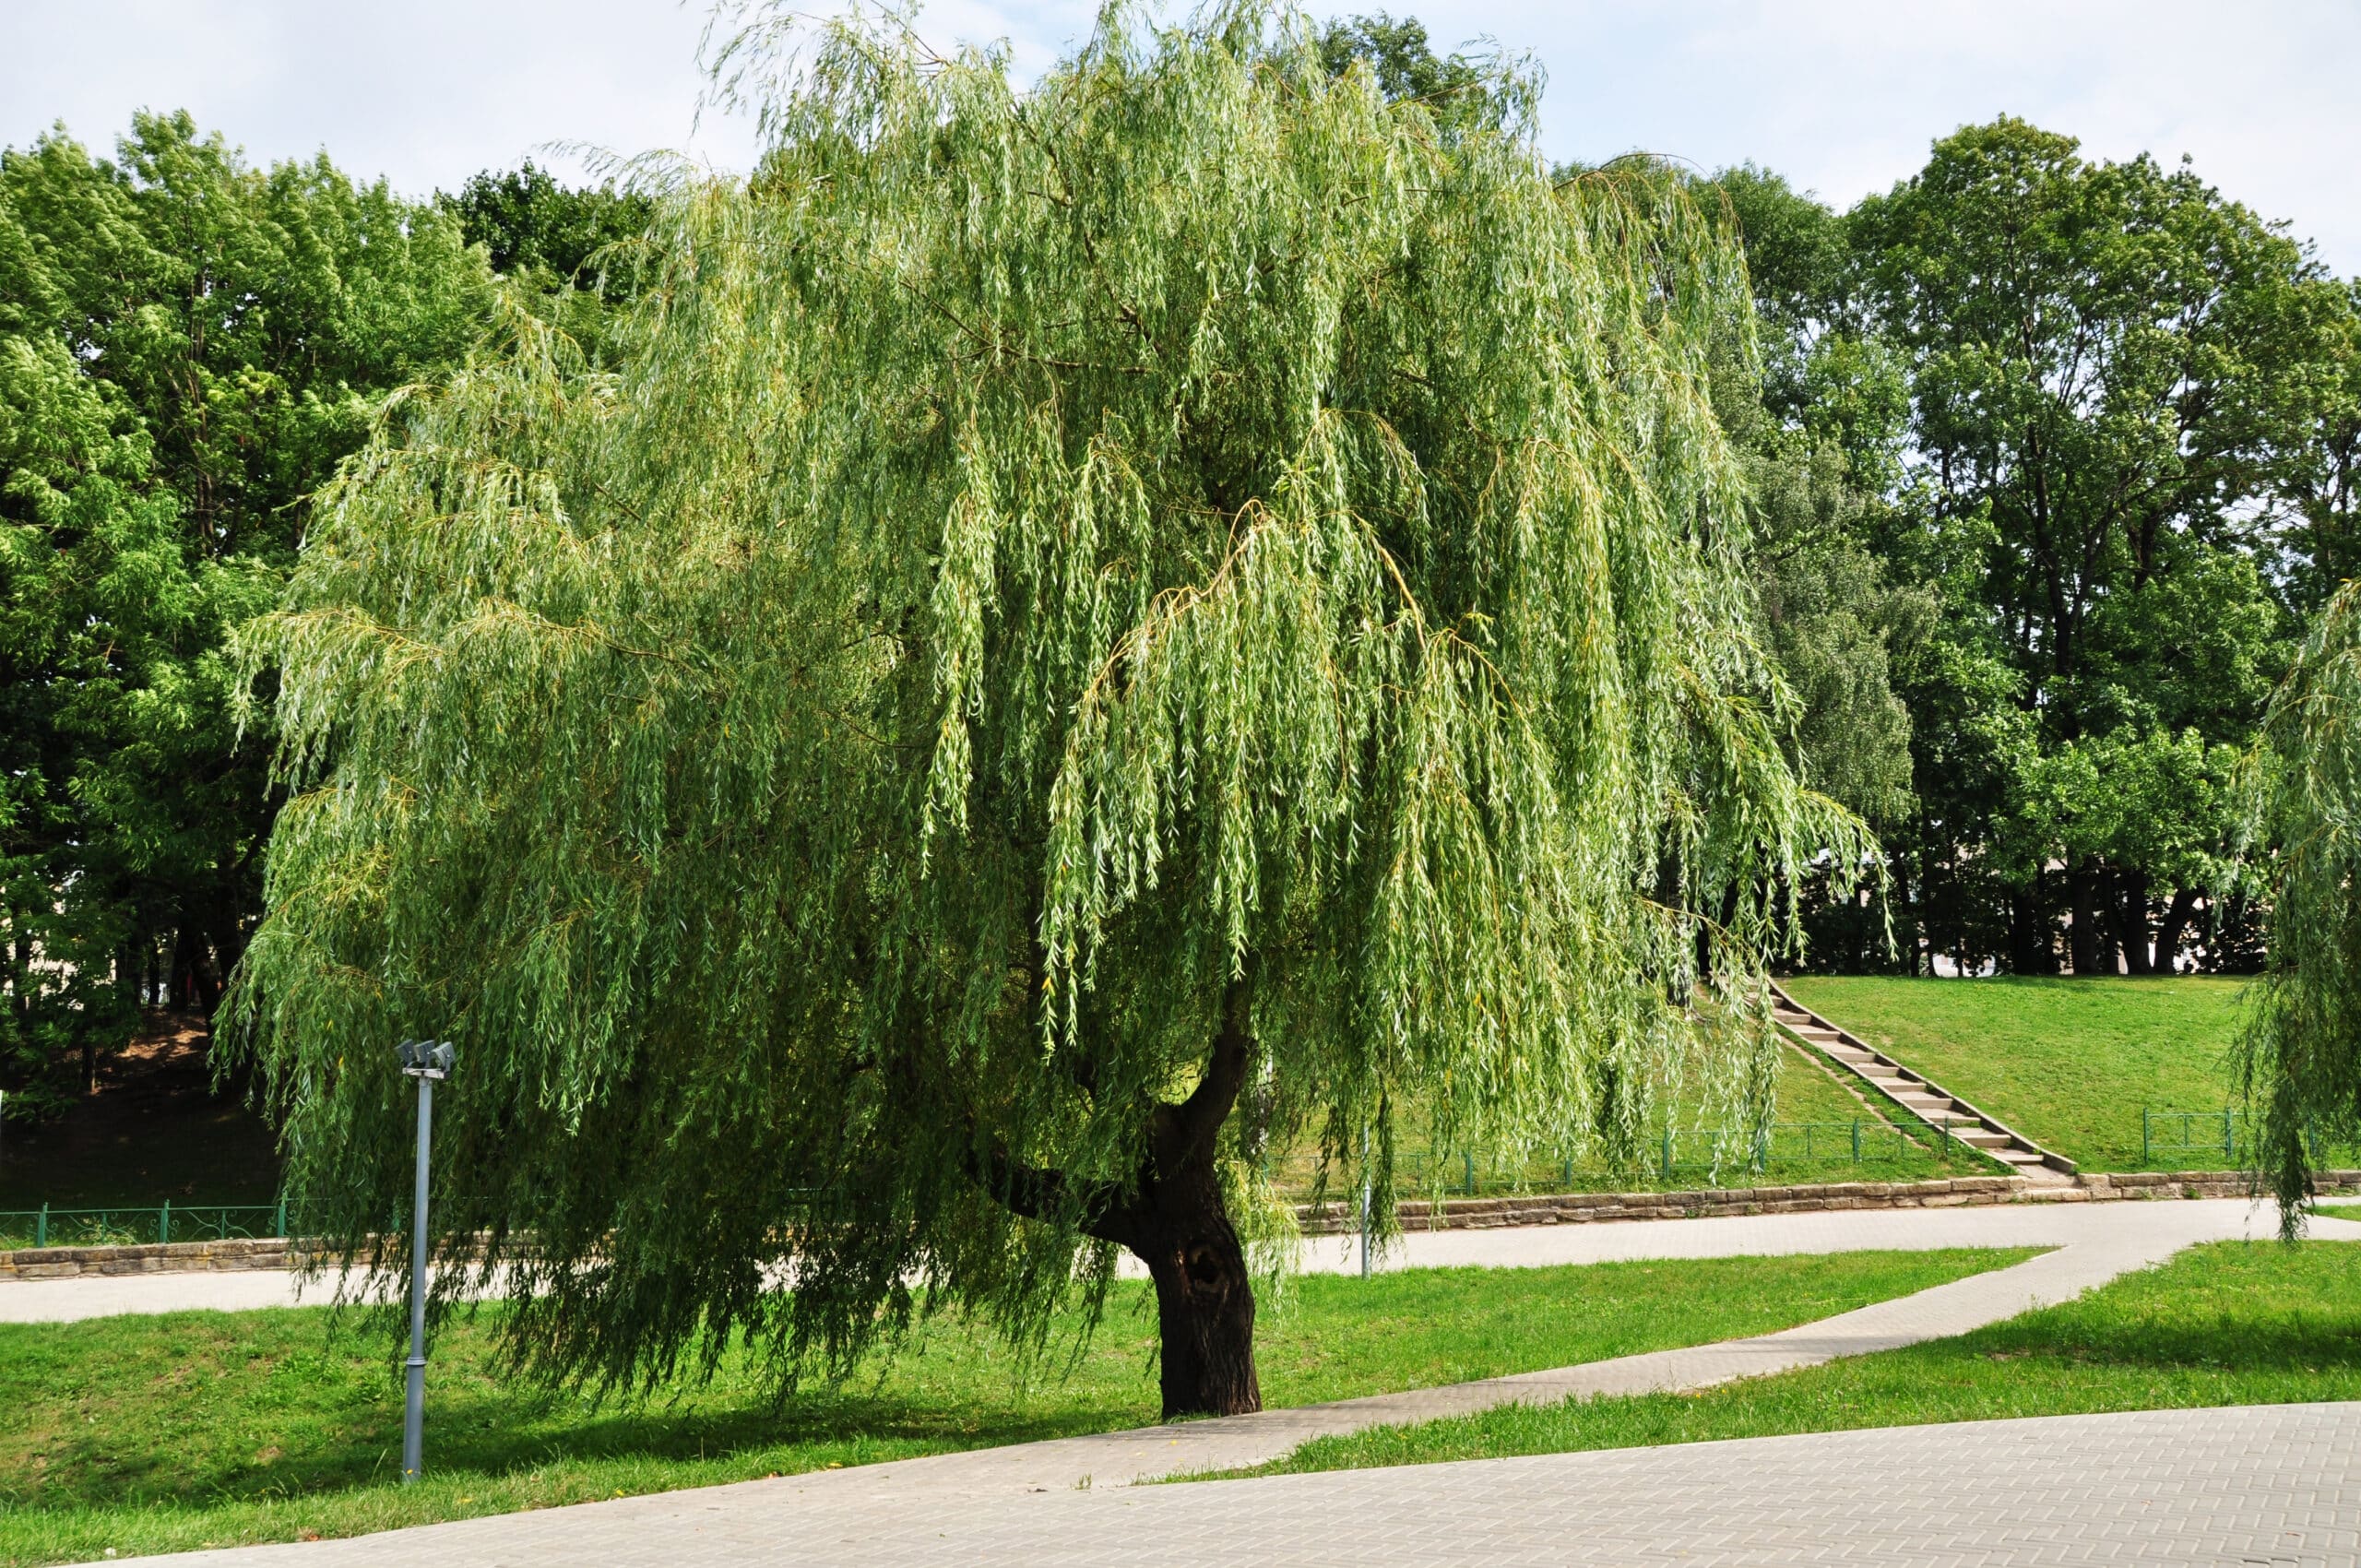  Weeping willow: pelajari tentang tanaman dan kiat-kiat budidaya utama